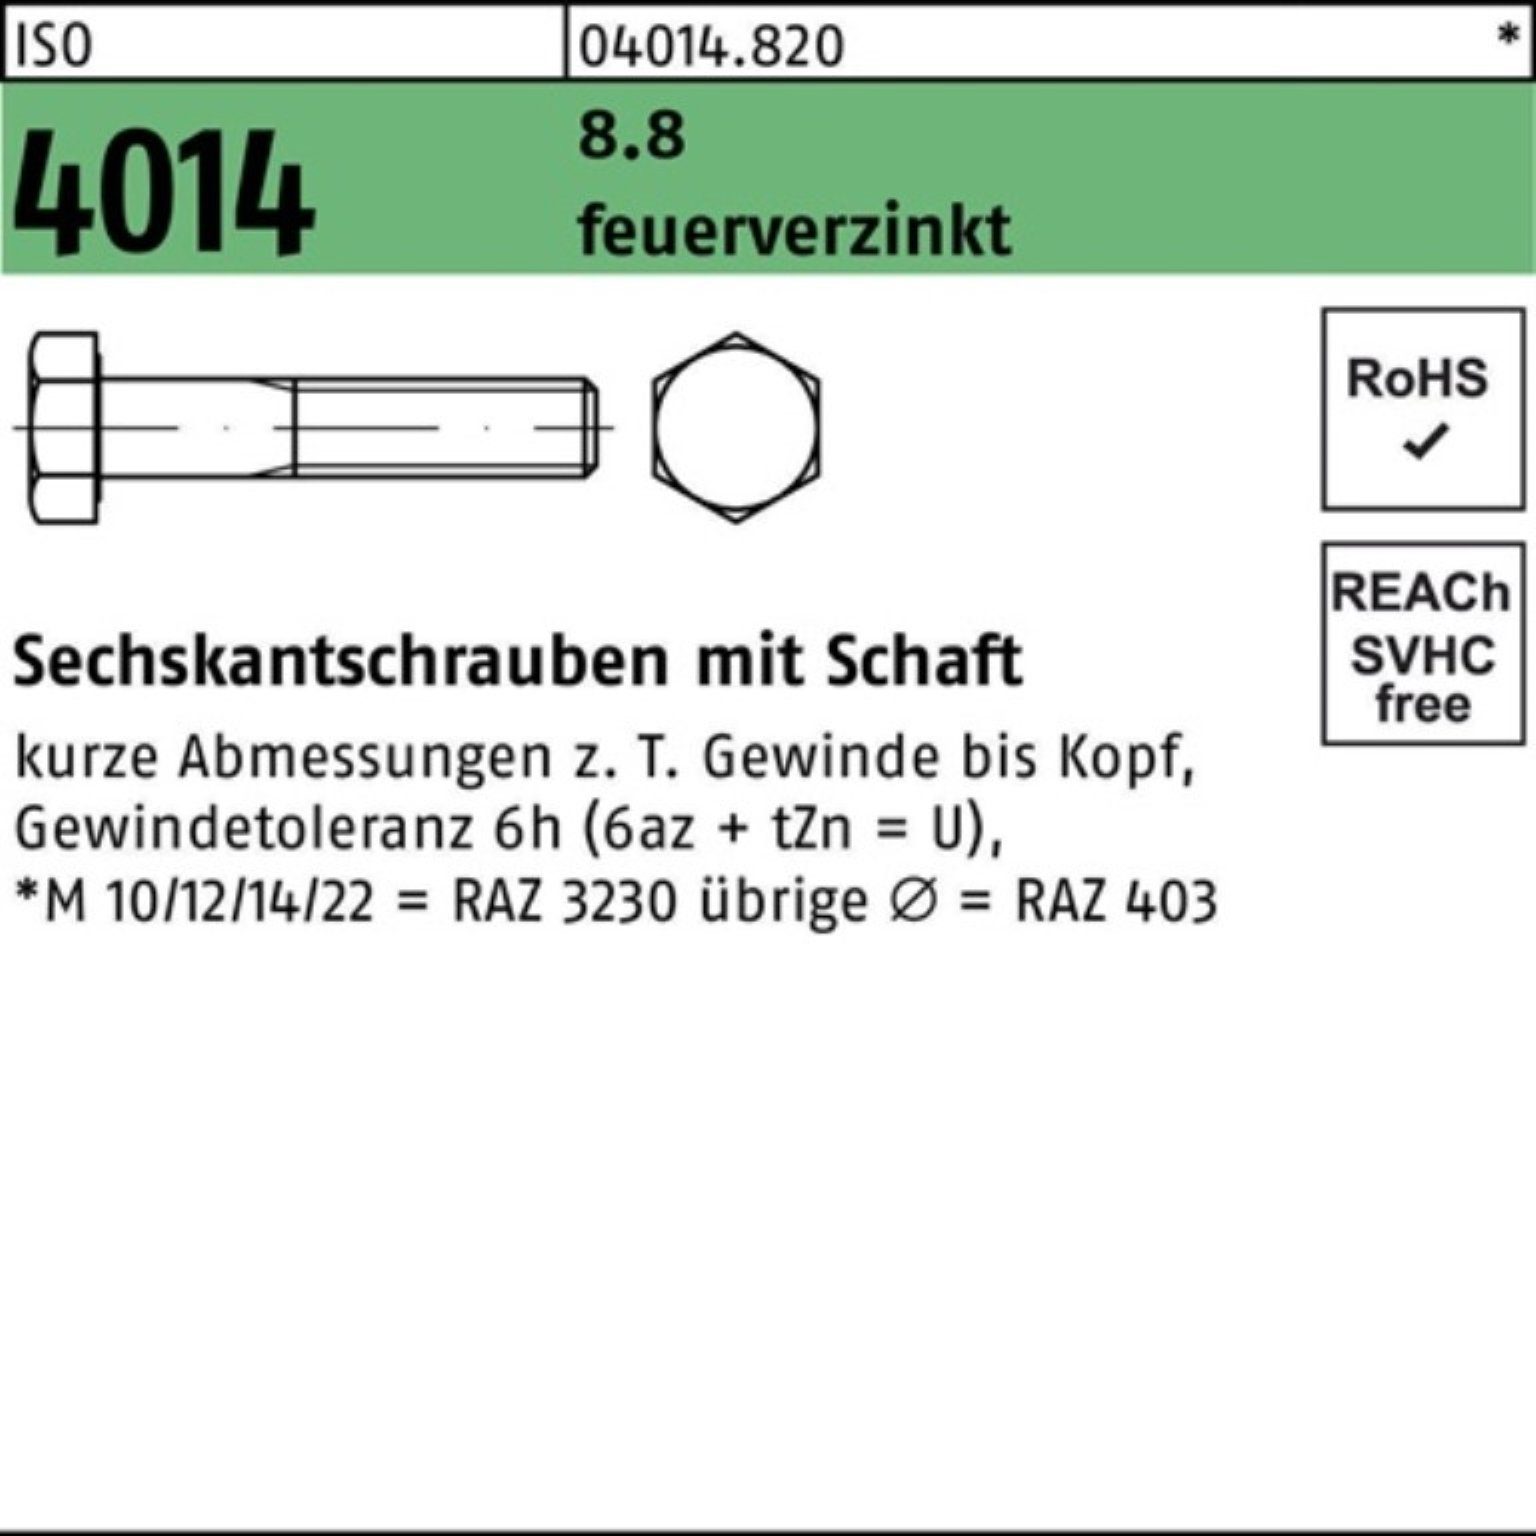 Bufab Sechskantschraube 200er Pack ISO 60 200 M8x 4014 Sechskantschraube feuerverz. 8.8 Schaft